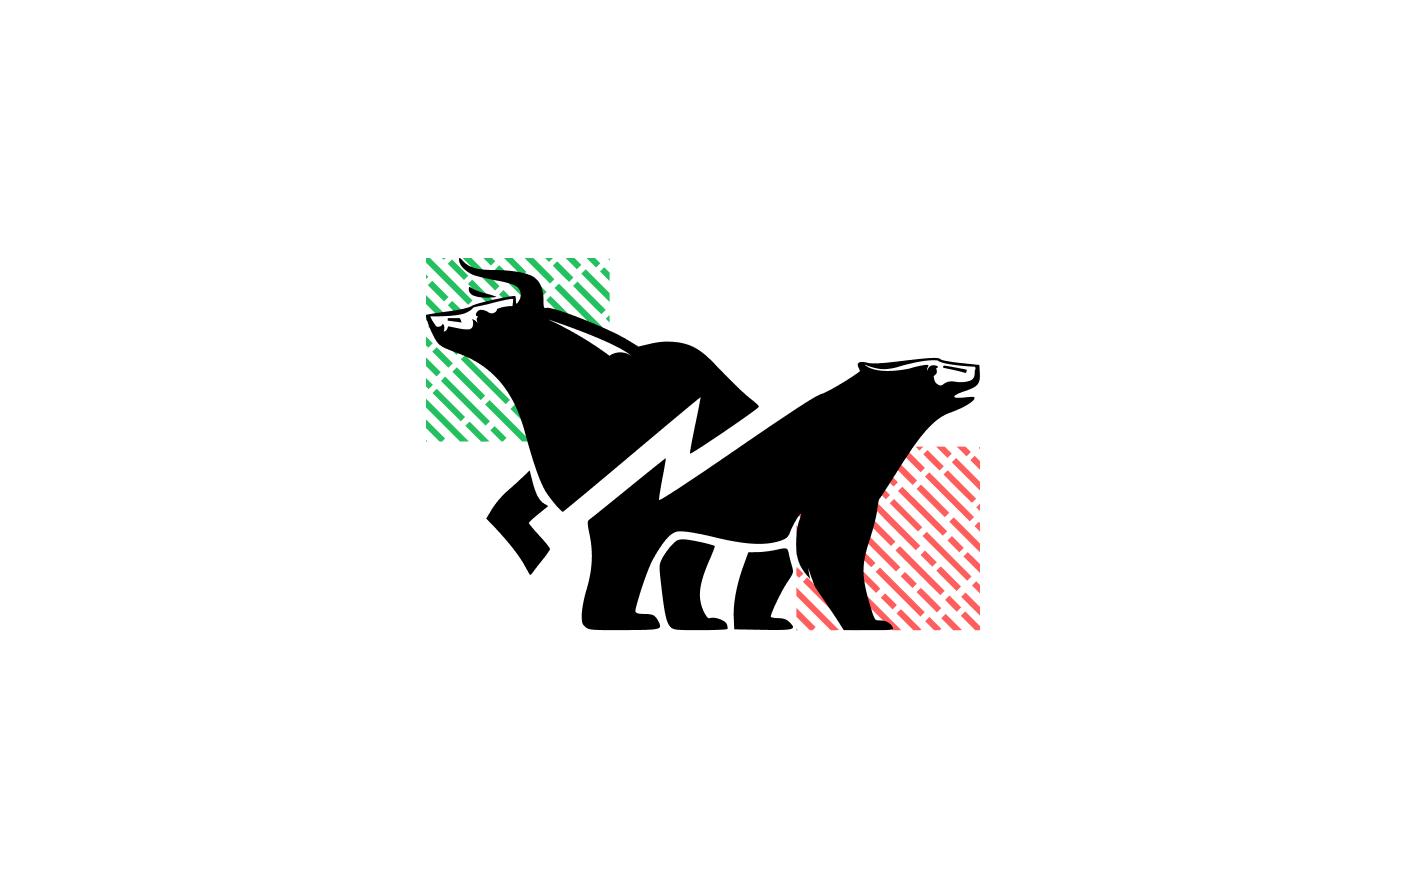 Arte com touro e urso pretos cruzados por um raio, representando o período de alta e baixa do mercado, respectivamente